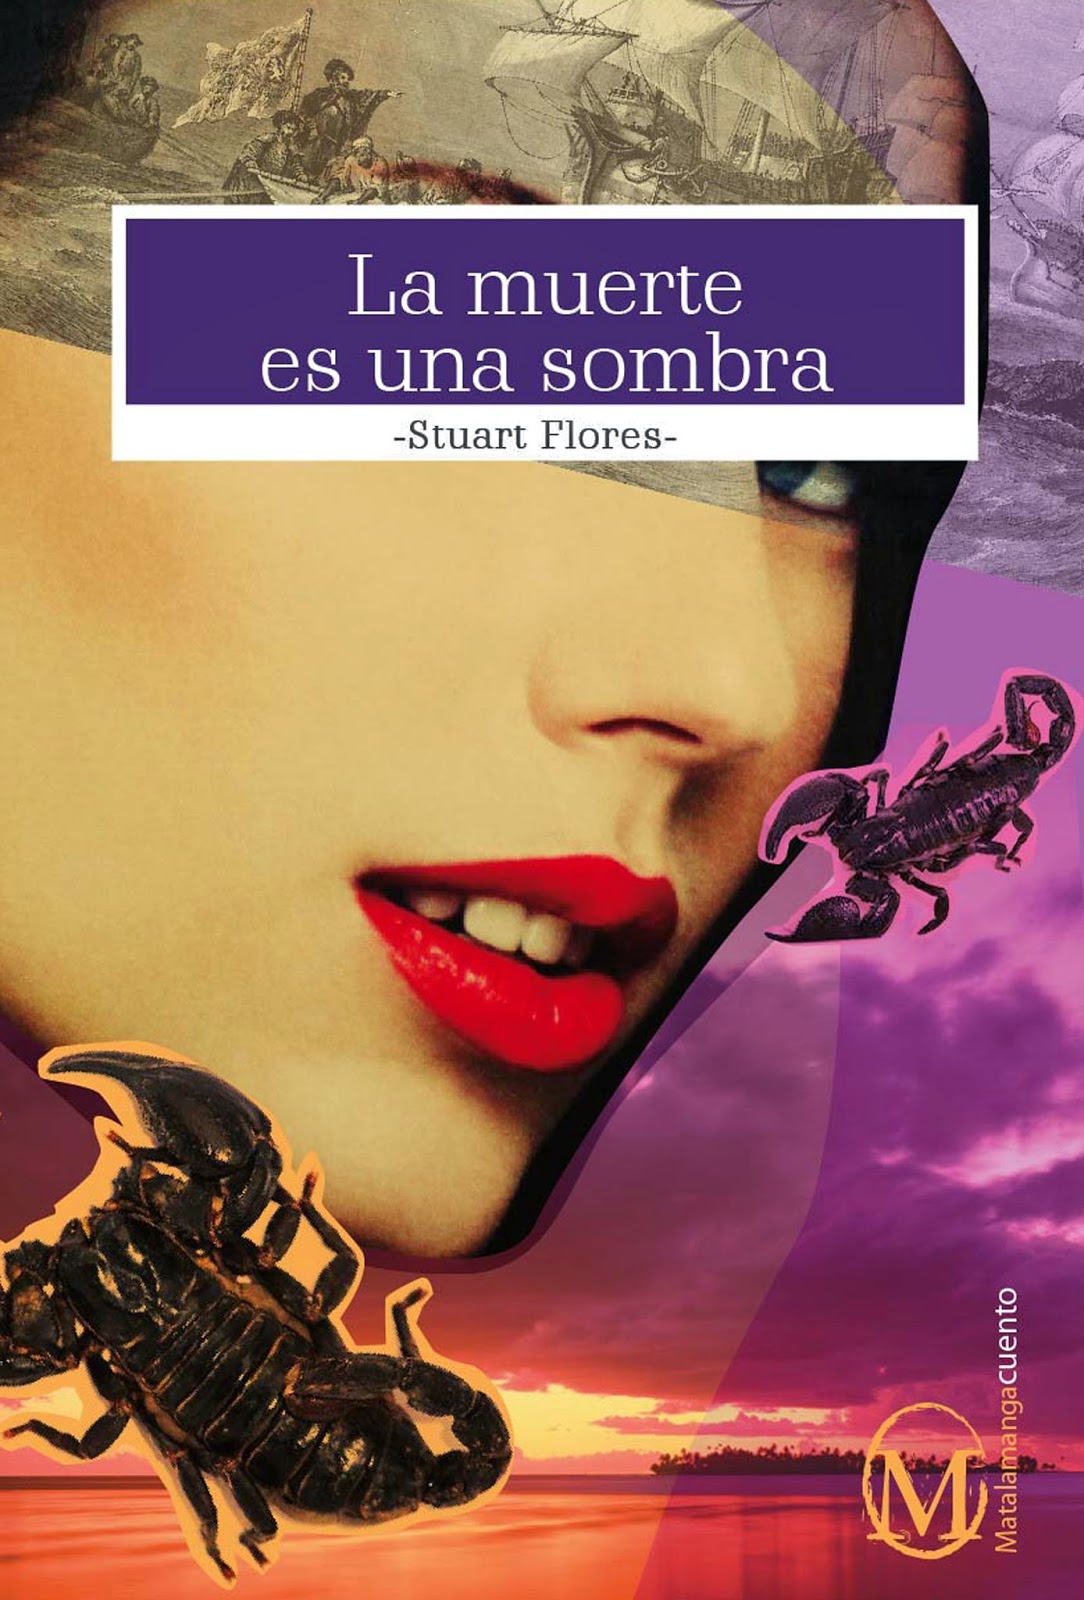 http://www.librosperuanos.com/libros/detalle/13828/La-muerte-es-una-sombra